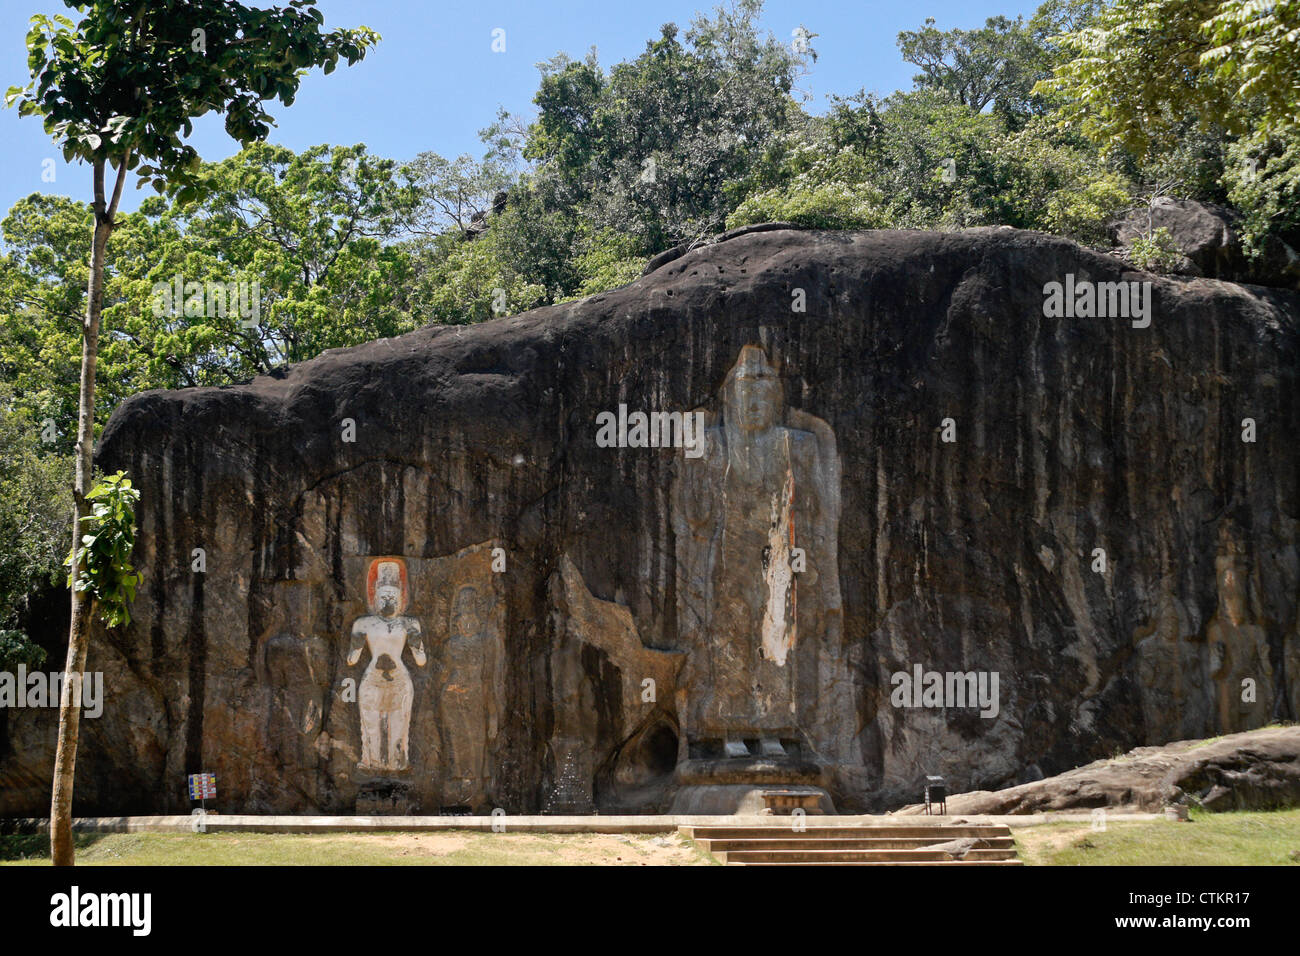 Rock-cut Buddha figures at Buduruwagala, Sri Lanka Stock Photo